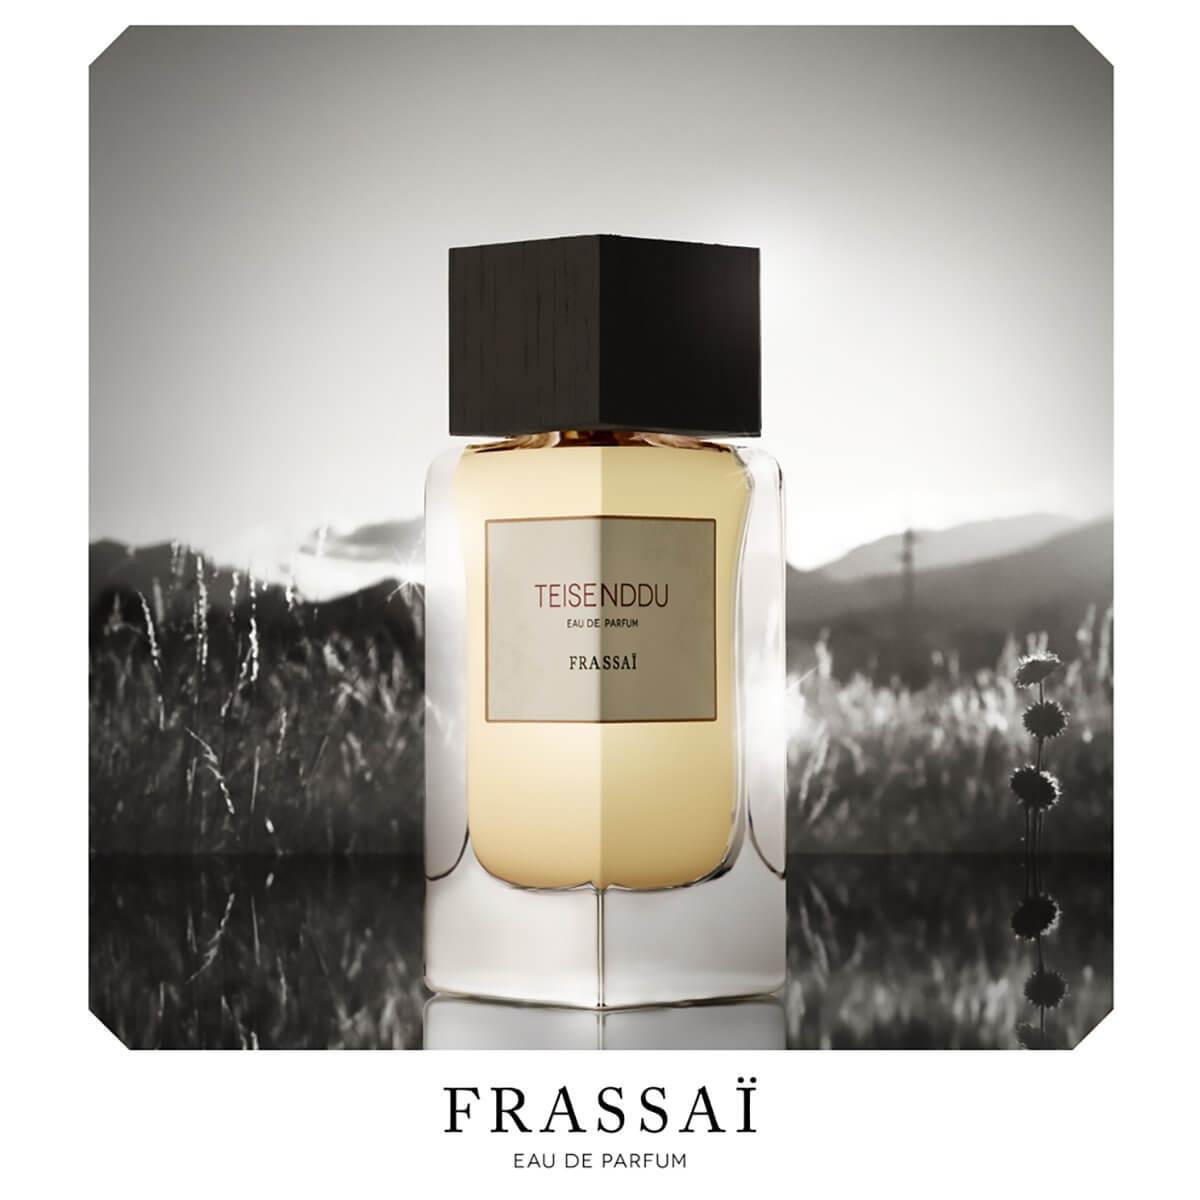 Teisenddu by Frassai - Indigo Perfumery